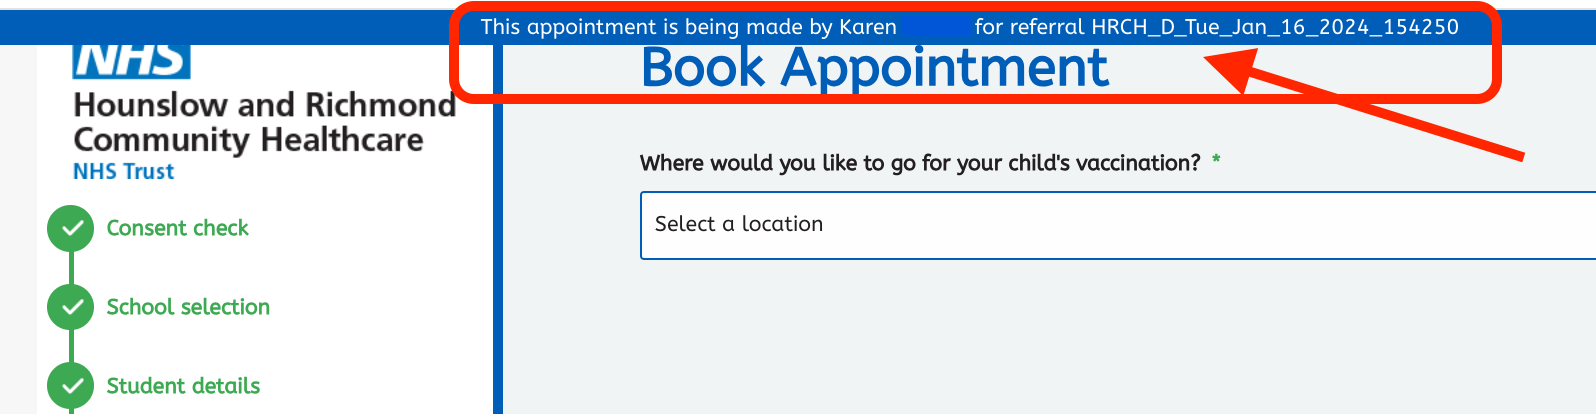 9d-Internal Book an appointment button-b.png